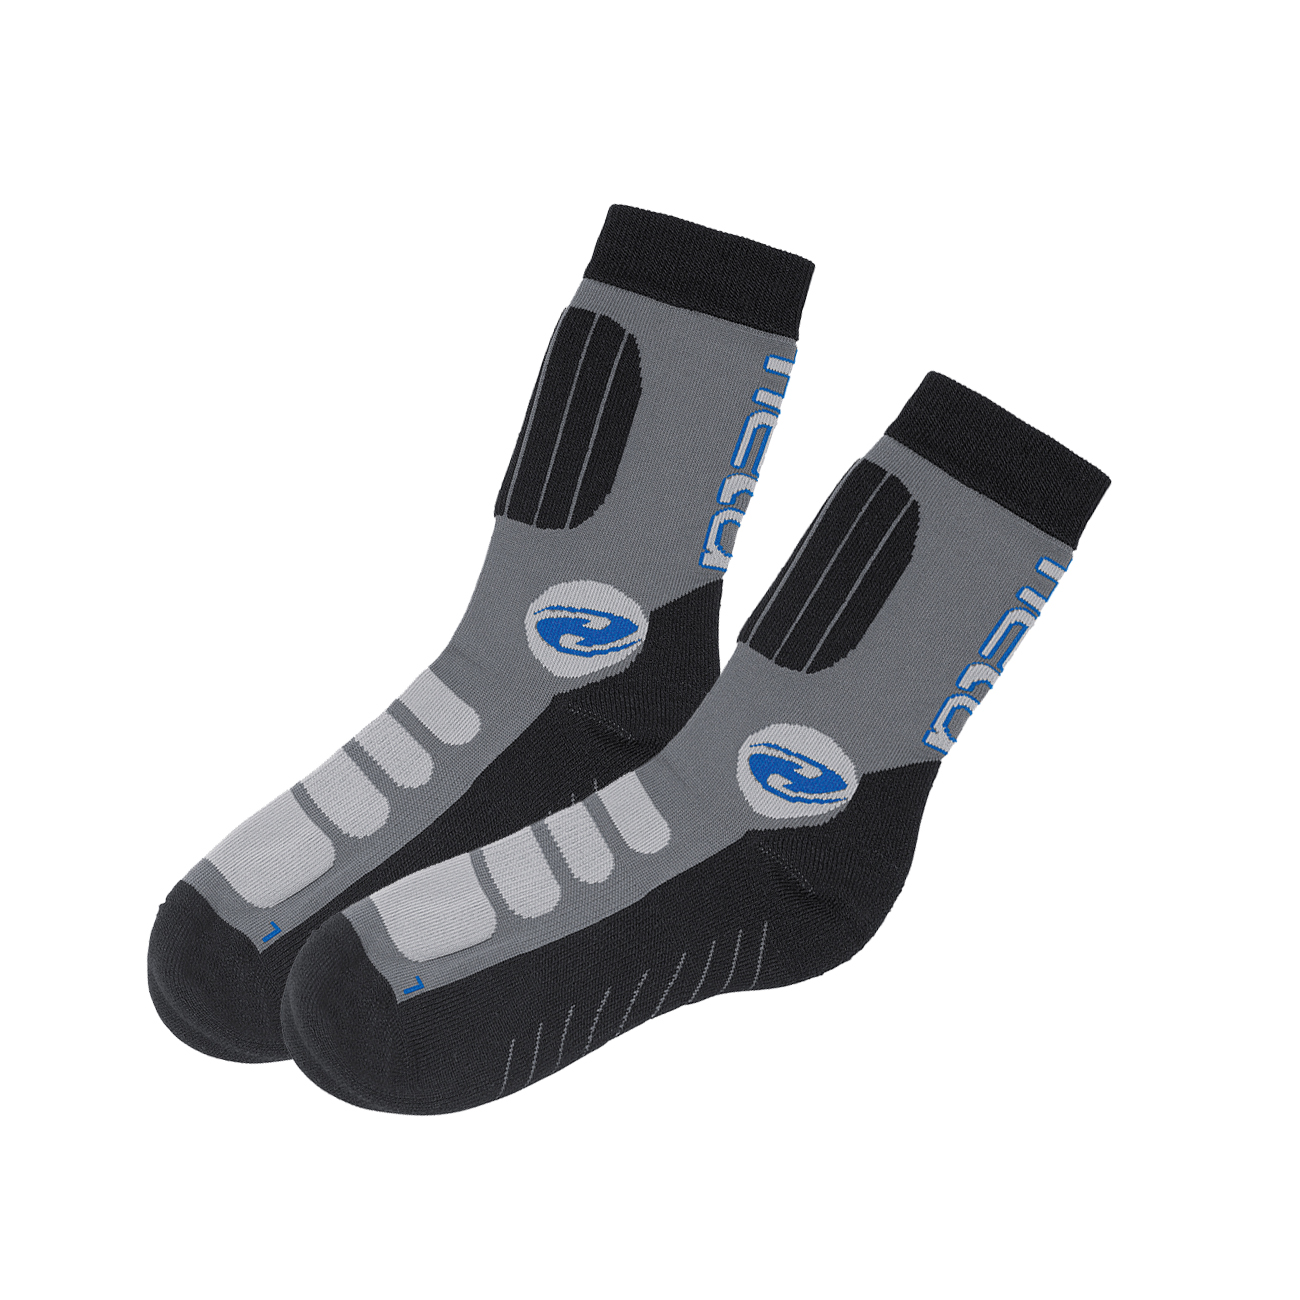 BIke socks short Calze mezze lunghe da moto Held-Cool-Dry